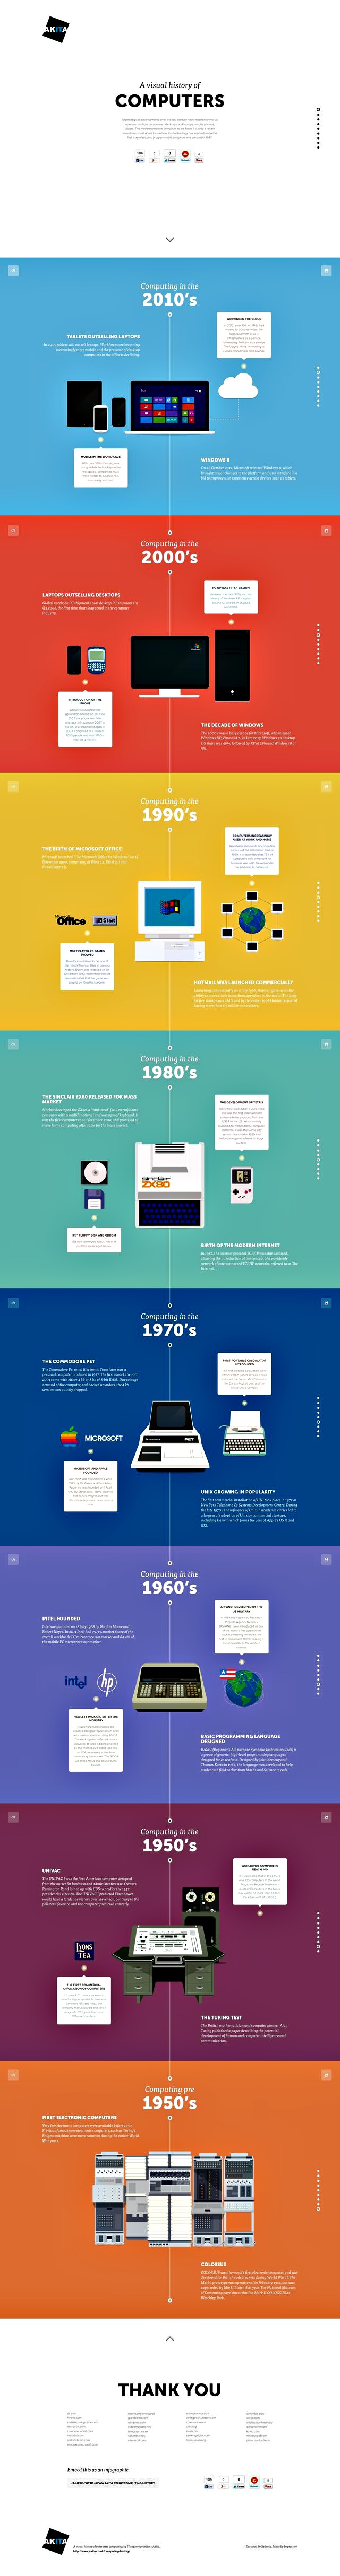 Una infografía para conocer la historia de los ordenadores